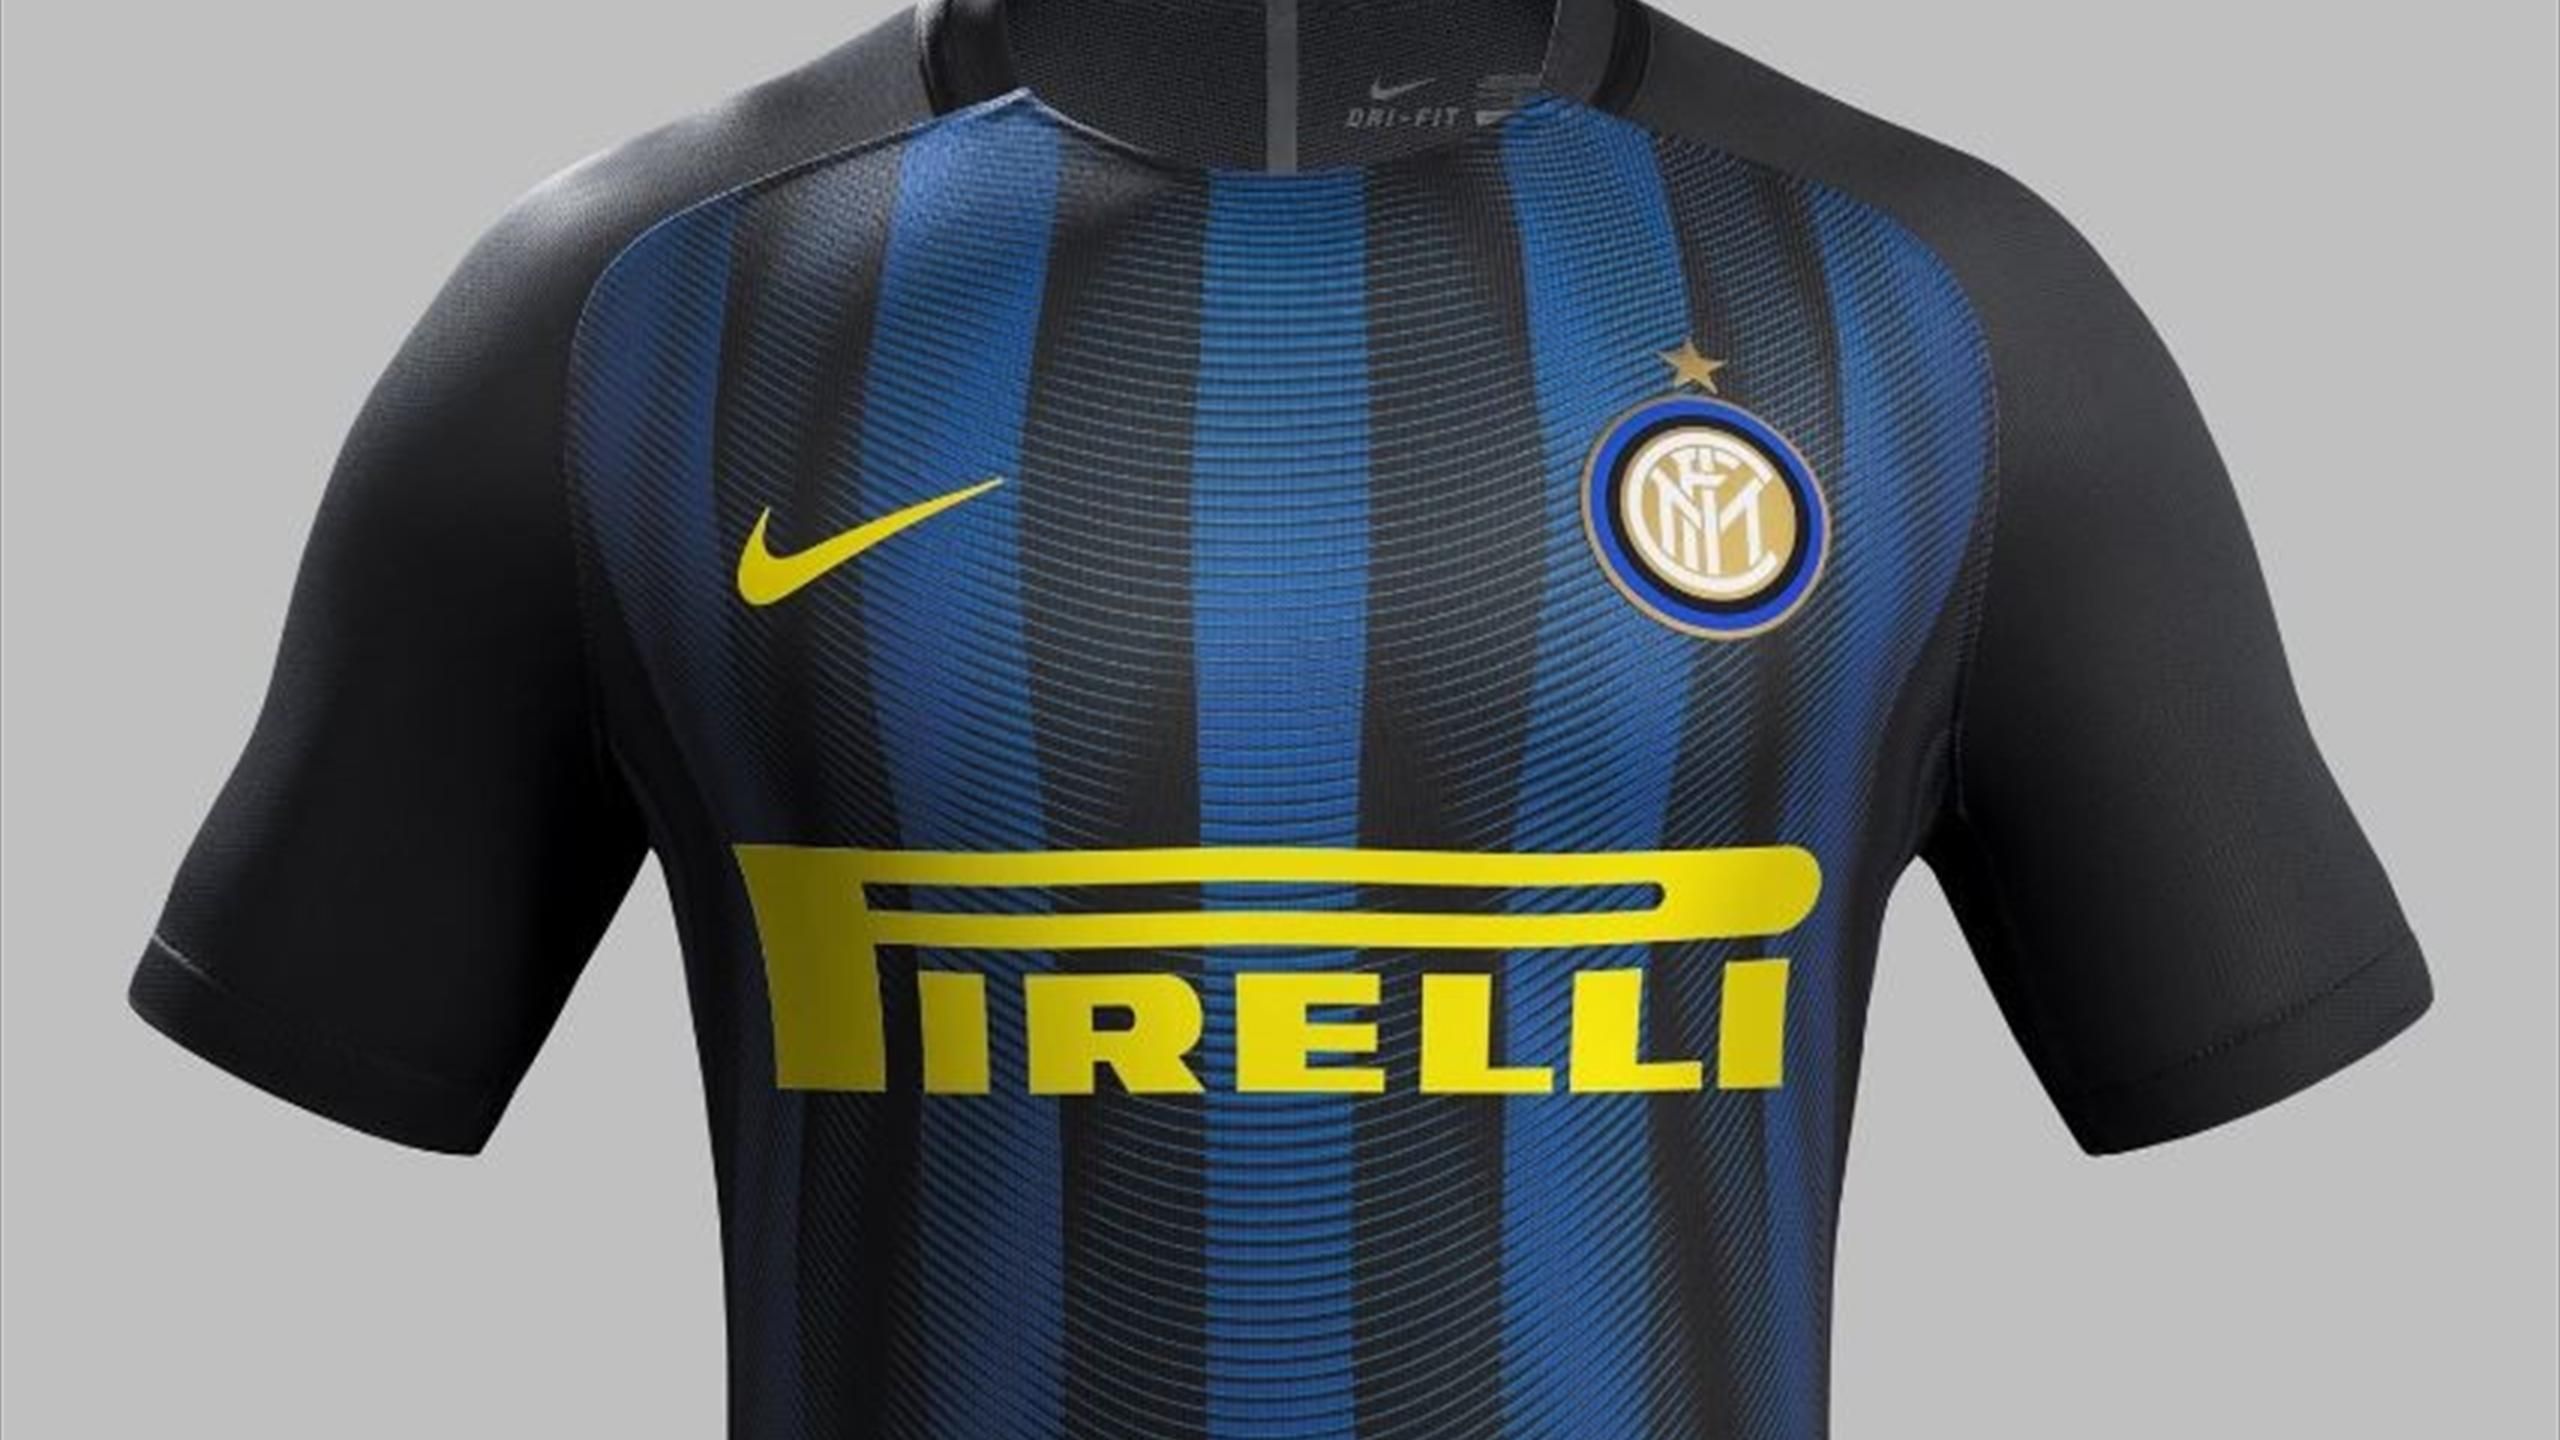 Inter: le nuove maglie per la stagione 2016/17. Mistero su quelle  d'allenamento, scompare Pirelli - Eurosport